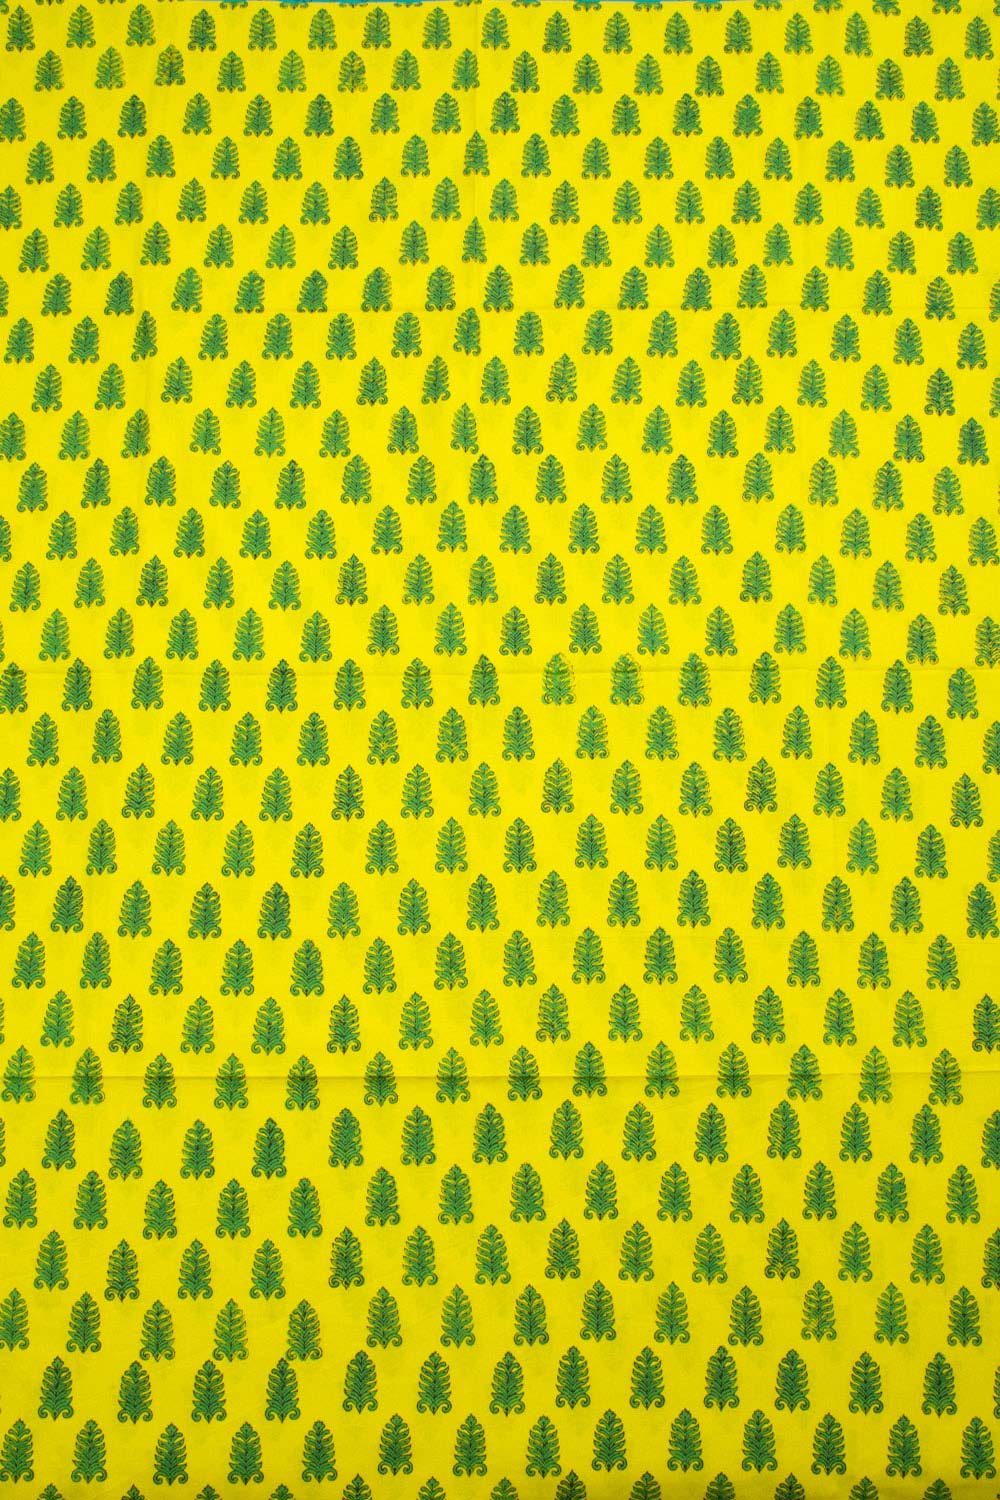 Lemon Yellow Hand Block Printed Mulmul Cotton Salwar Suit Material 10062850